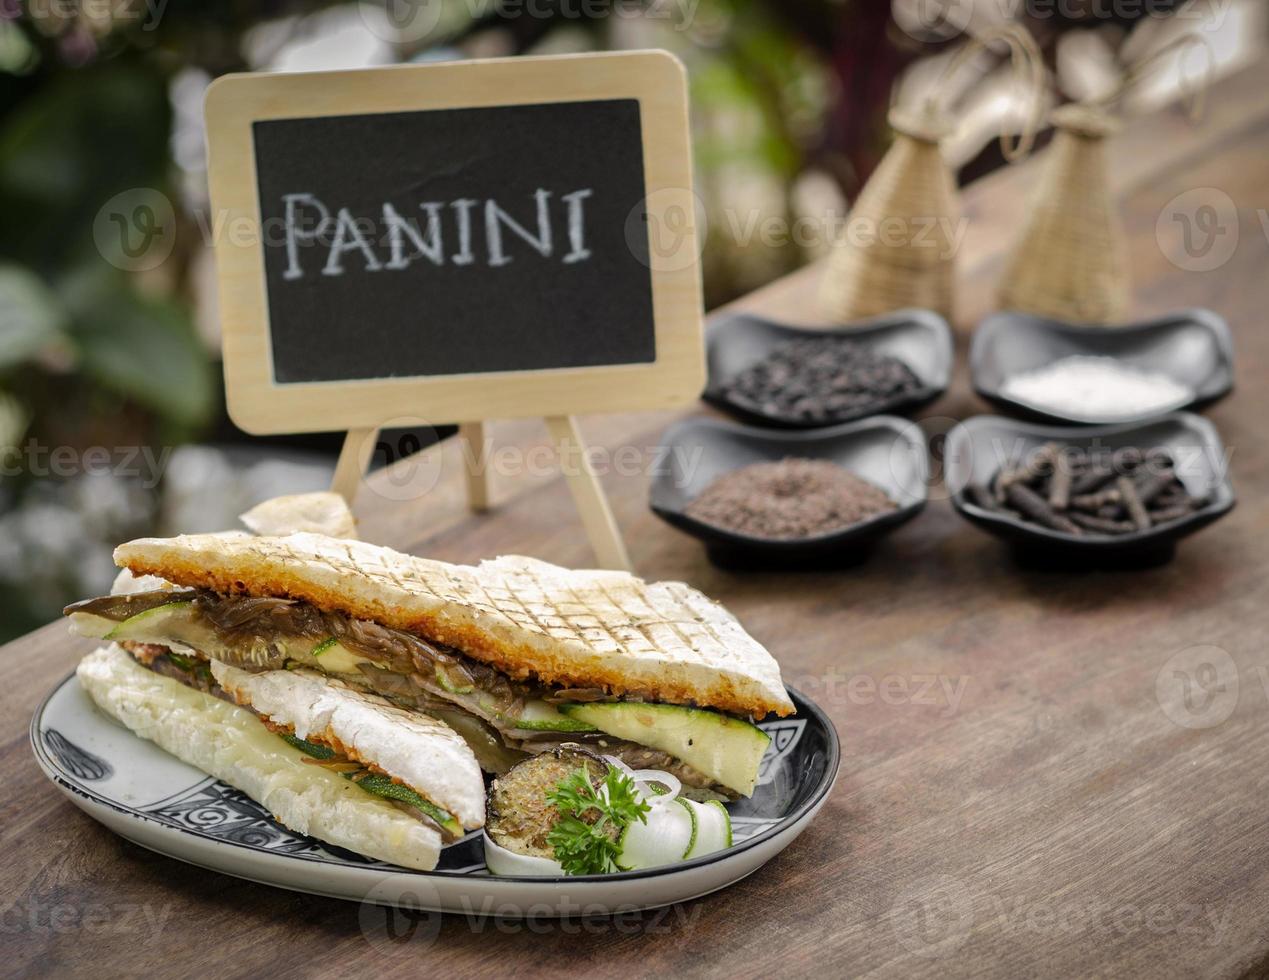 vegansk rostad grönsaksrökt panini -smörgås i rustik trädgårdsdukning utomhus på sicilien foto